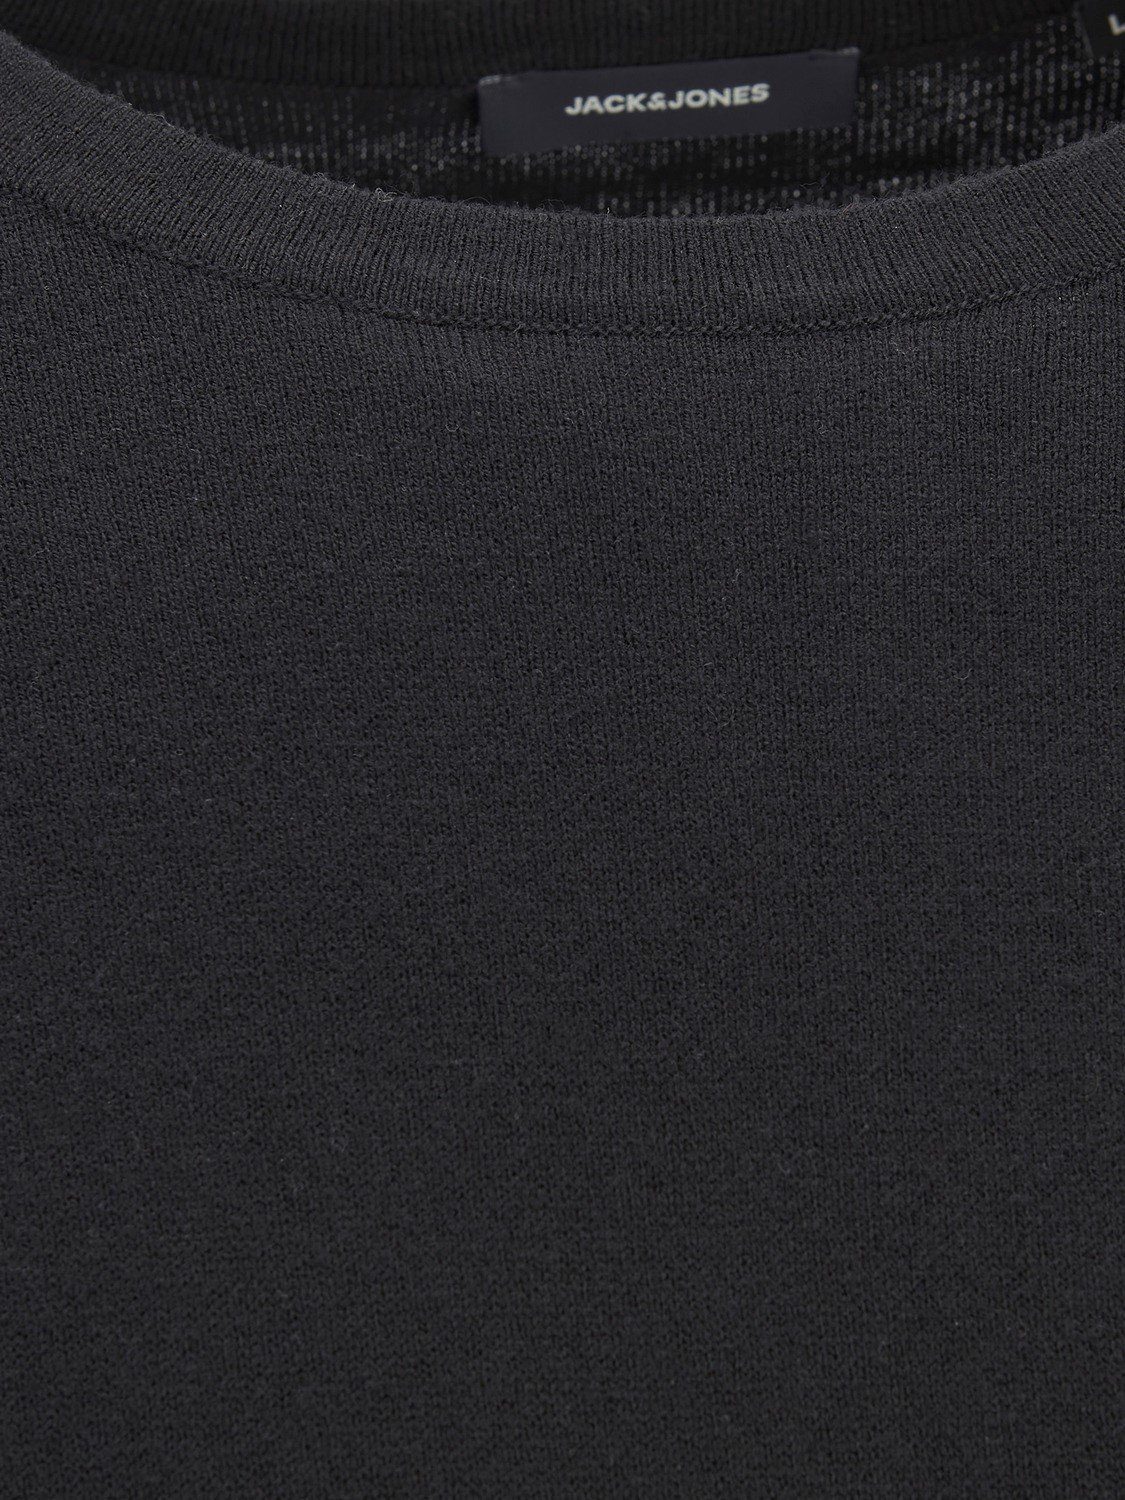 Dünner & 4295 Schwarz Basic Sweater JJEEMIL in Rundhals Strickpullover Langarm Jones Jack Longsleeve